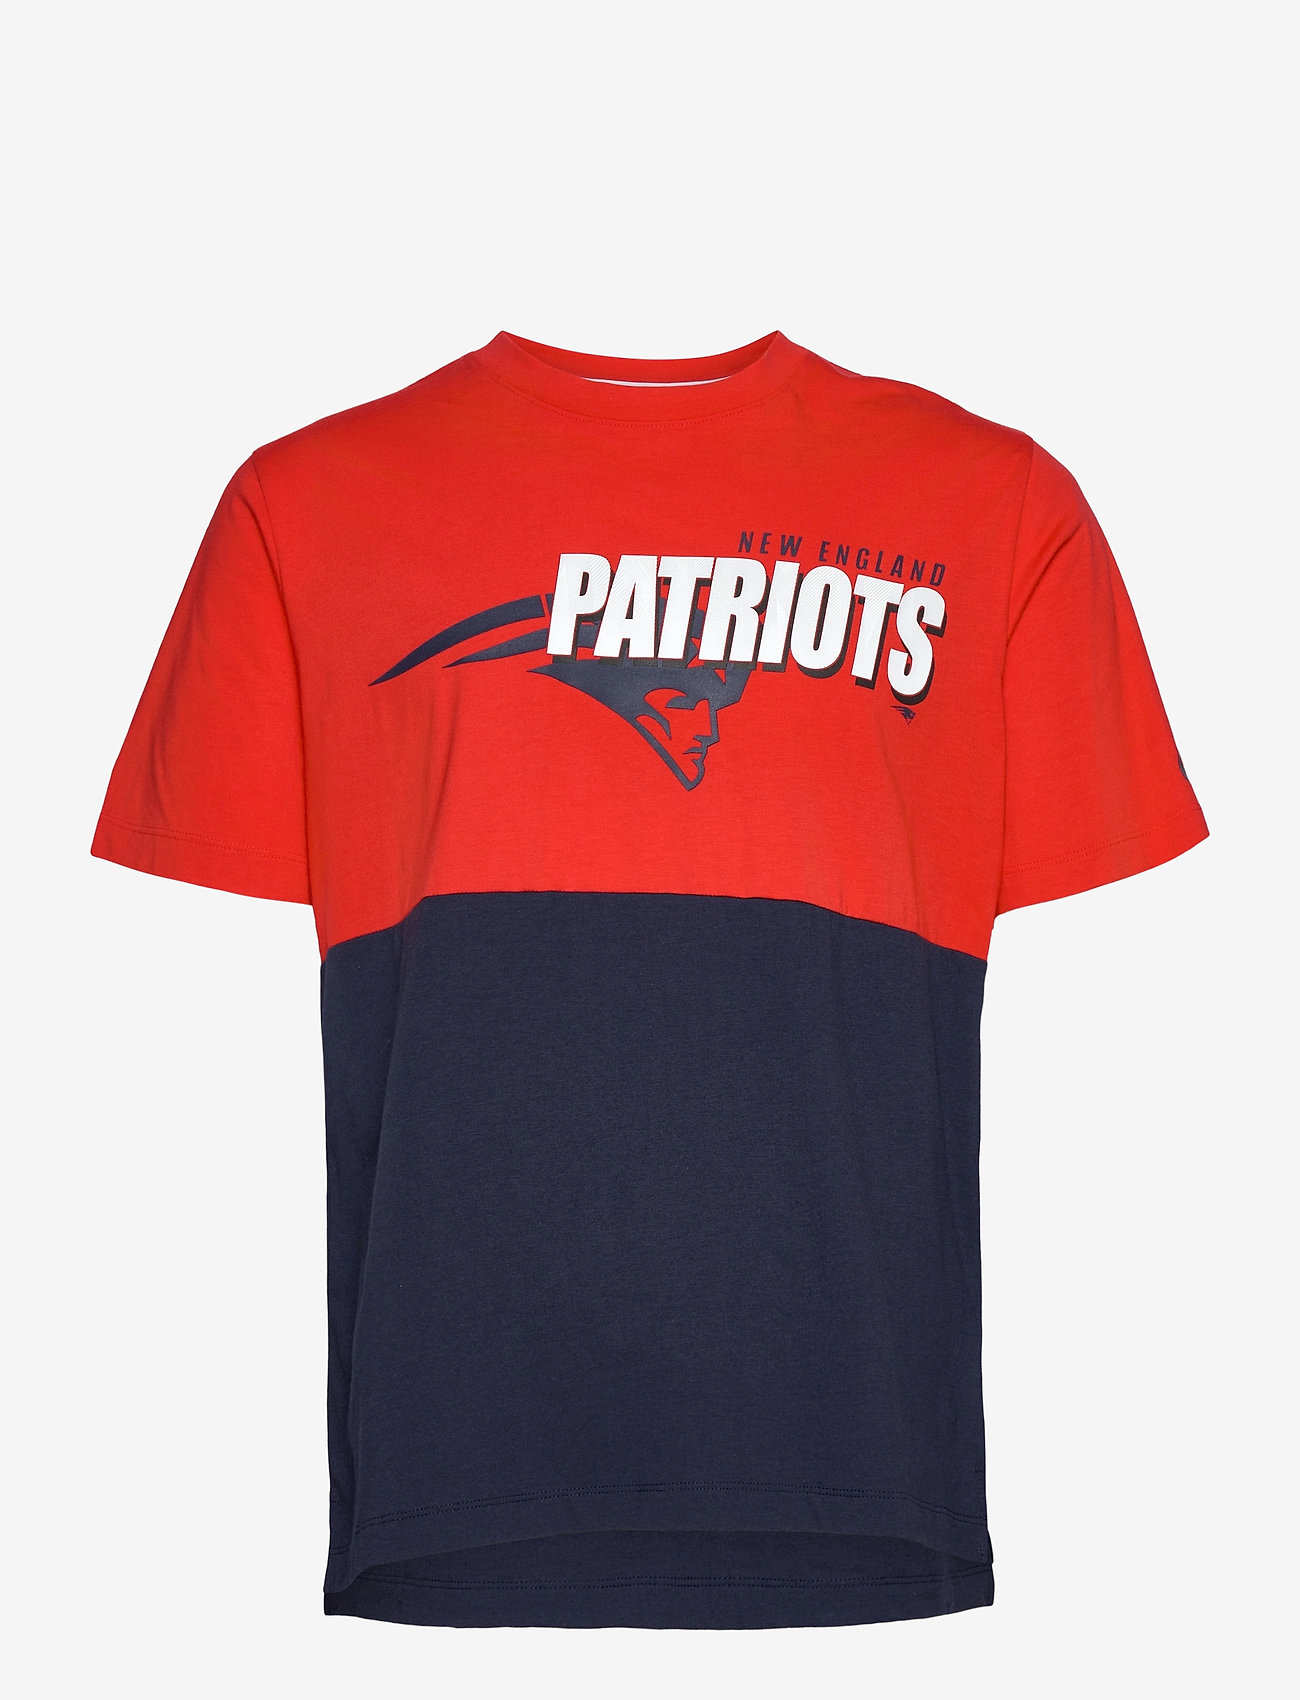 patriots nike shirt